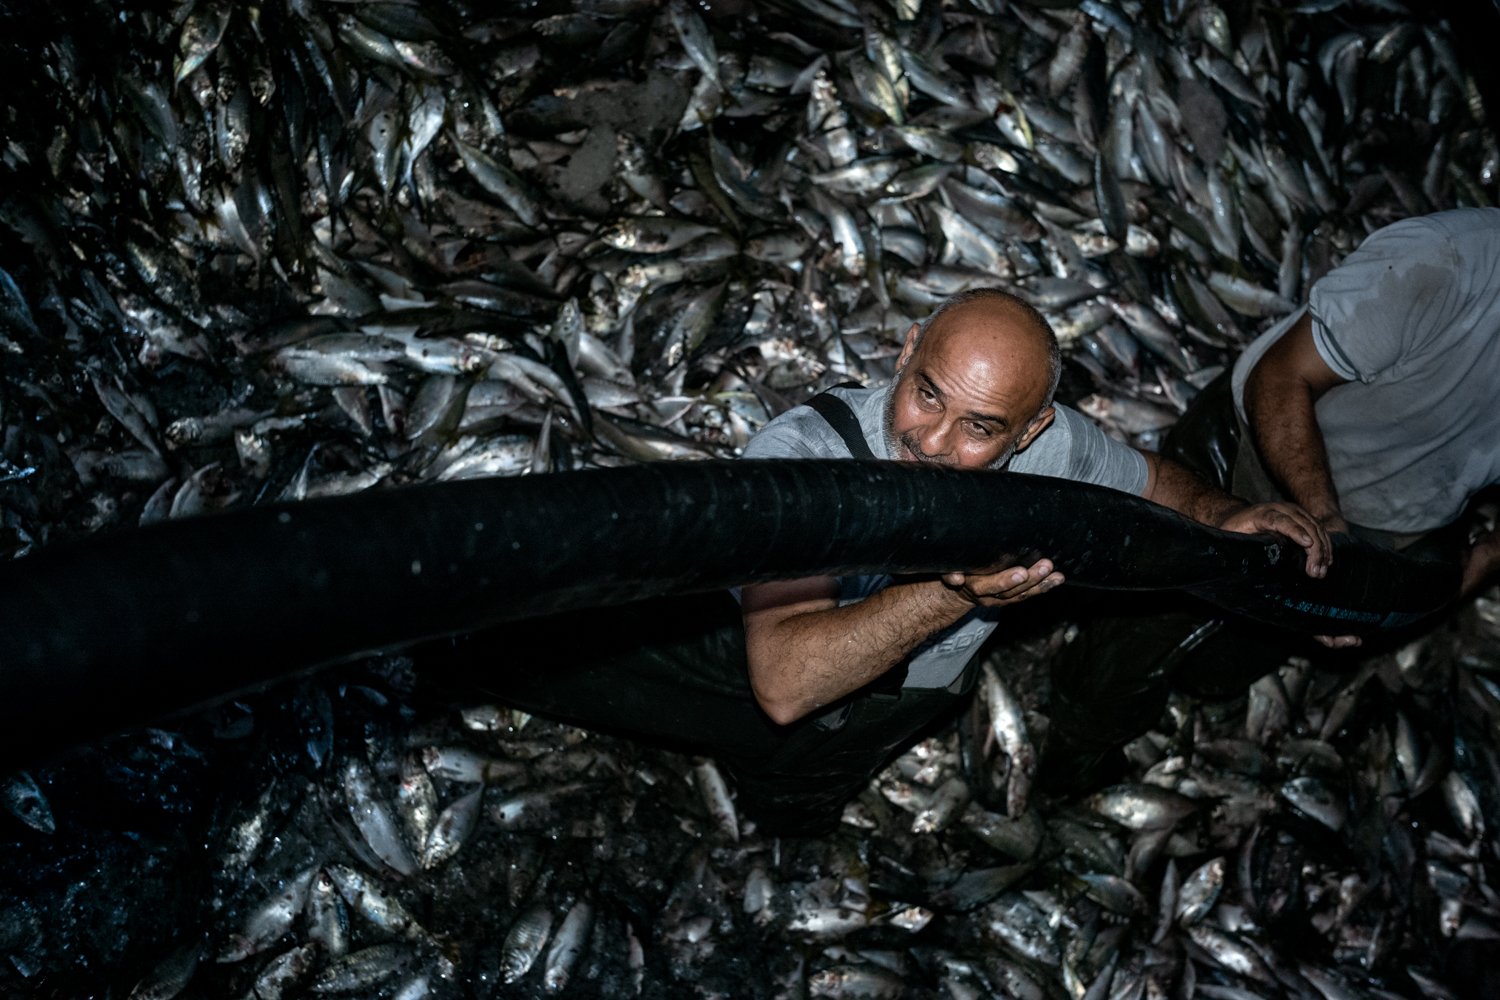  Internationale Fangflotten, oft aus der Türkei, aus China, Russland und Europa, schnappen sich den Fisch. 